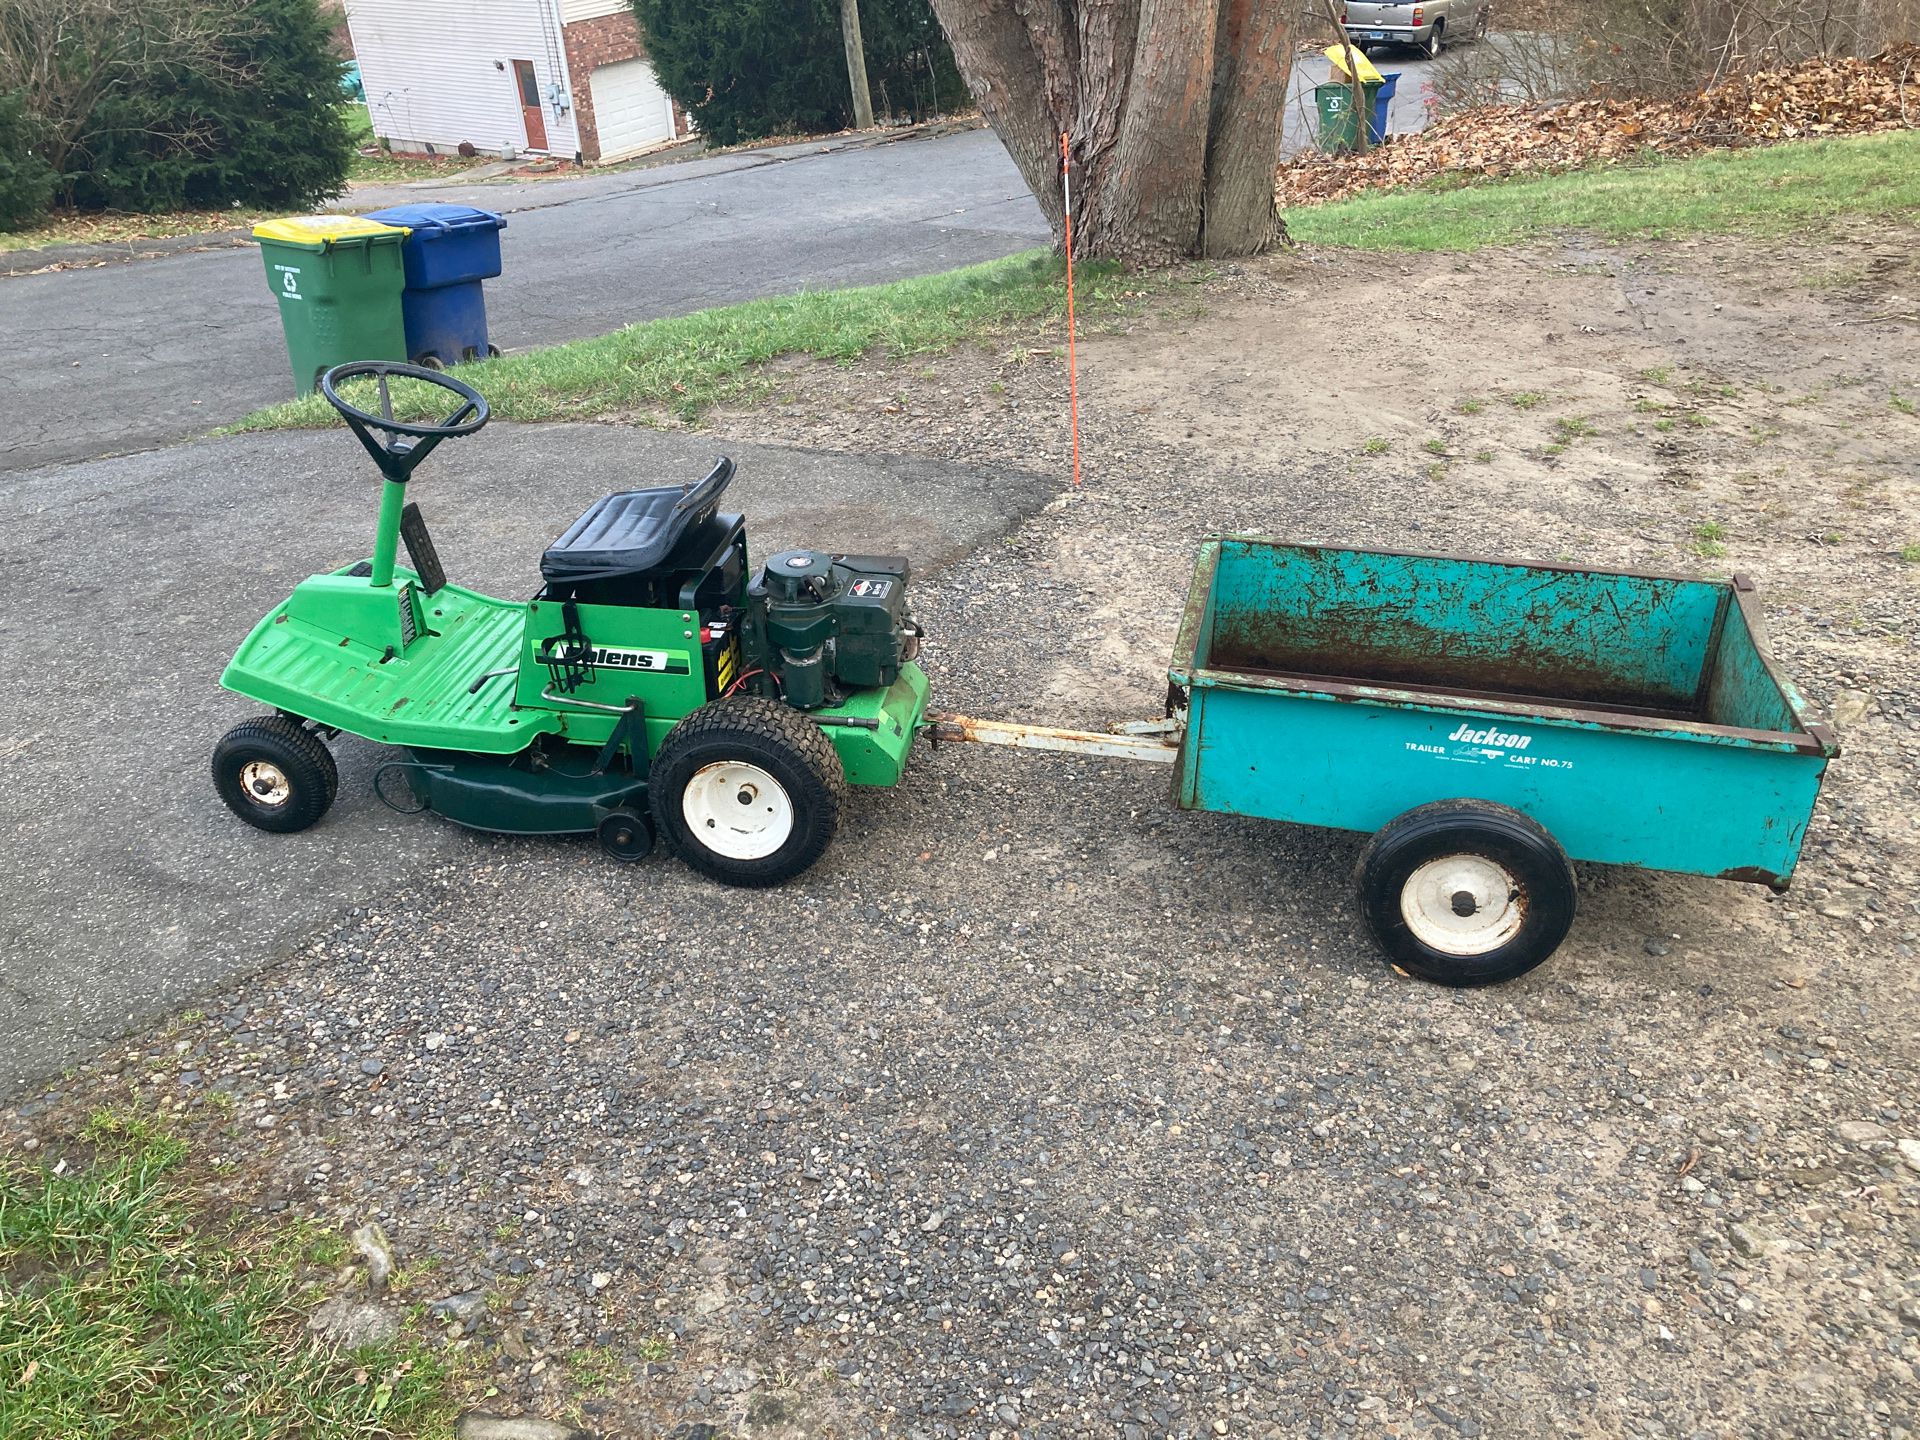 Bolens garden tractor and trailer